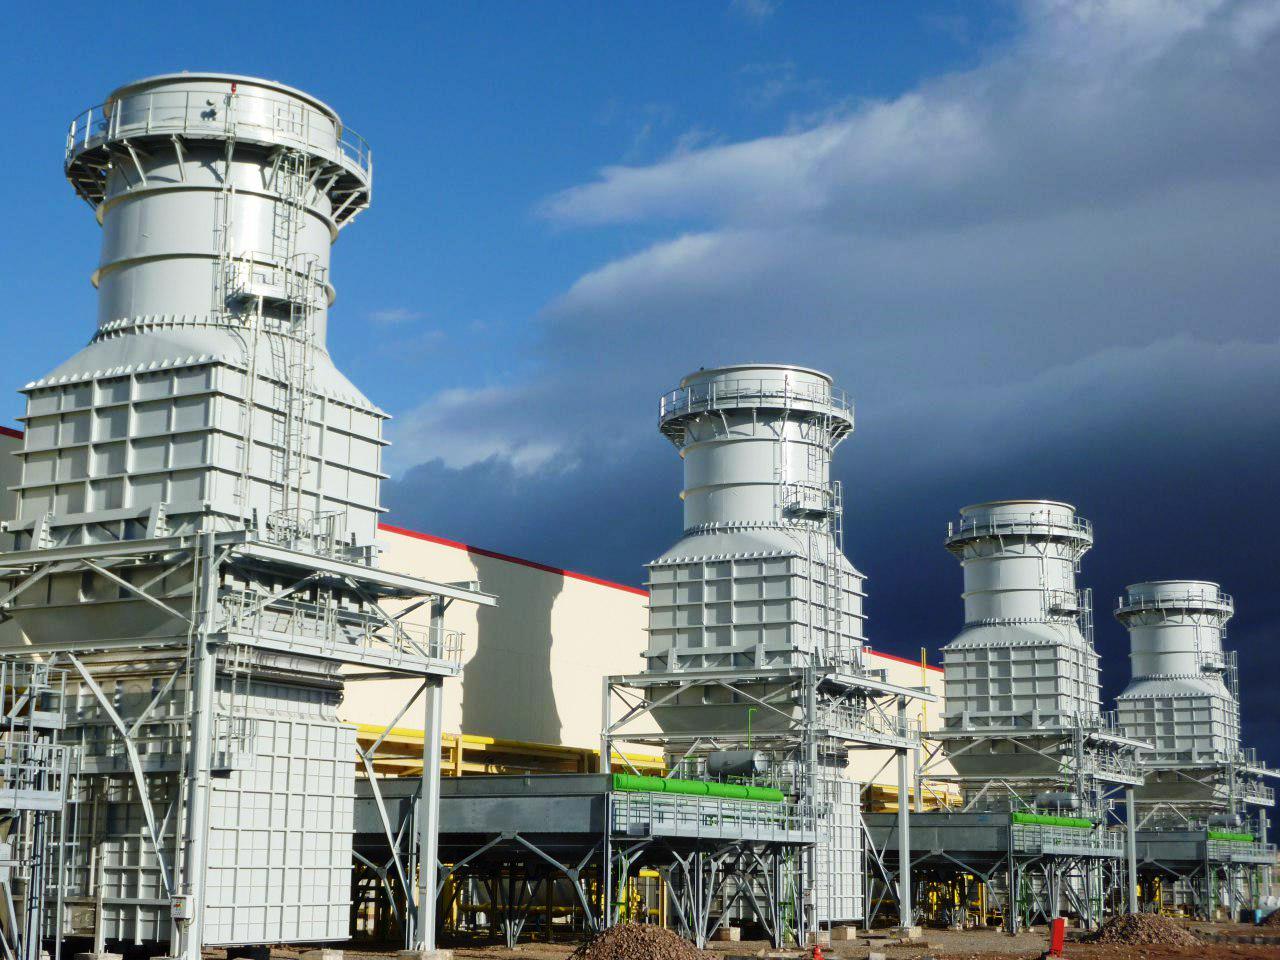 ۱۲ درصد اشتغال صنعتی زنجان در واحدهای برق و الکترونیک است